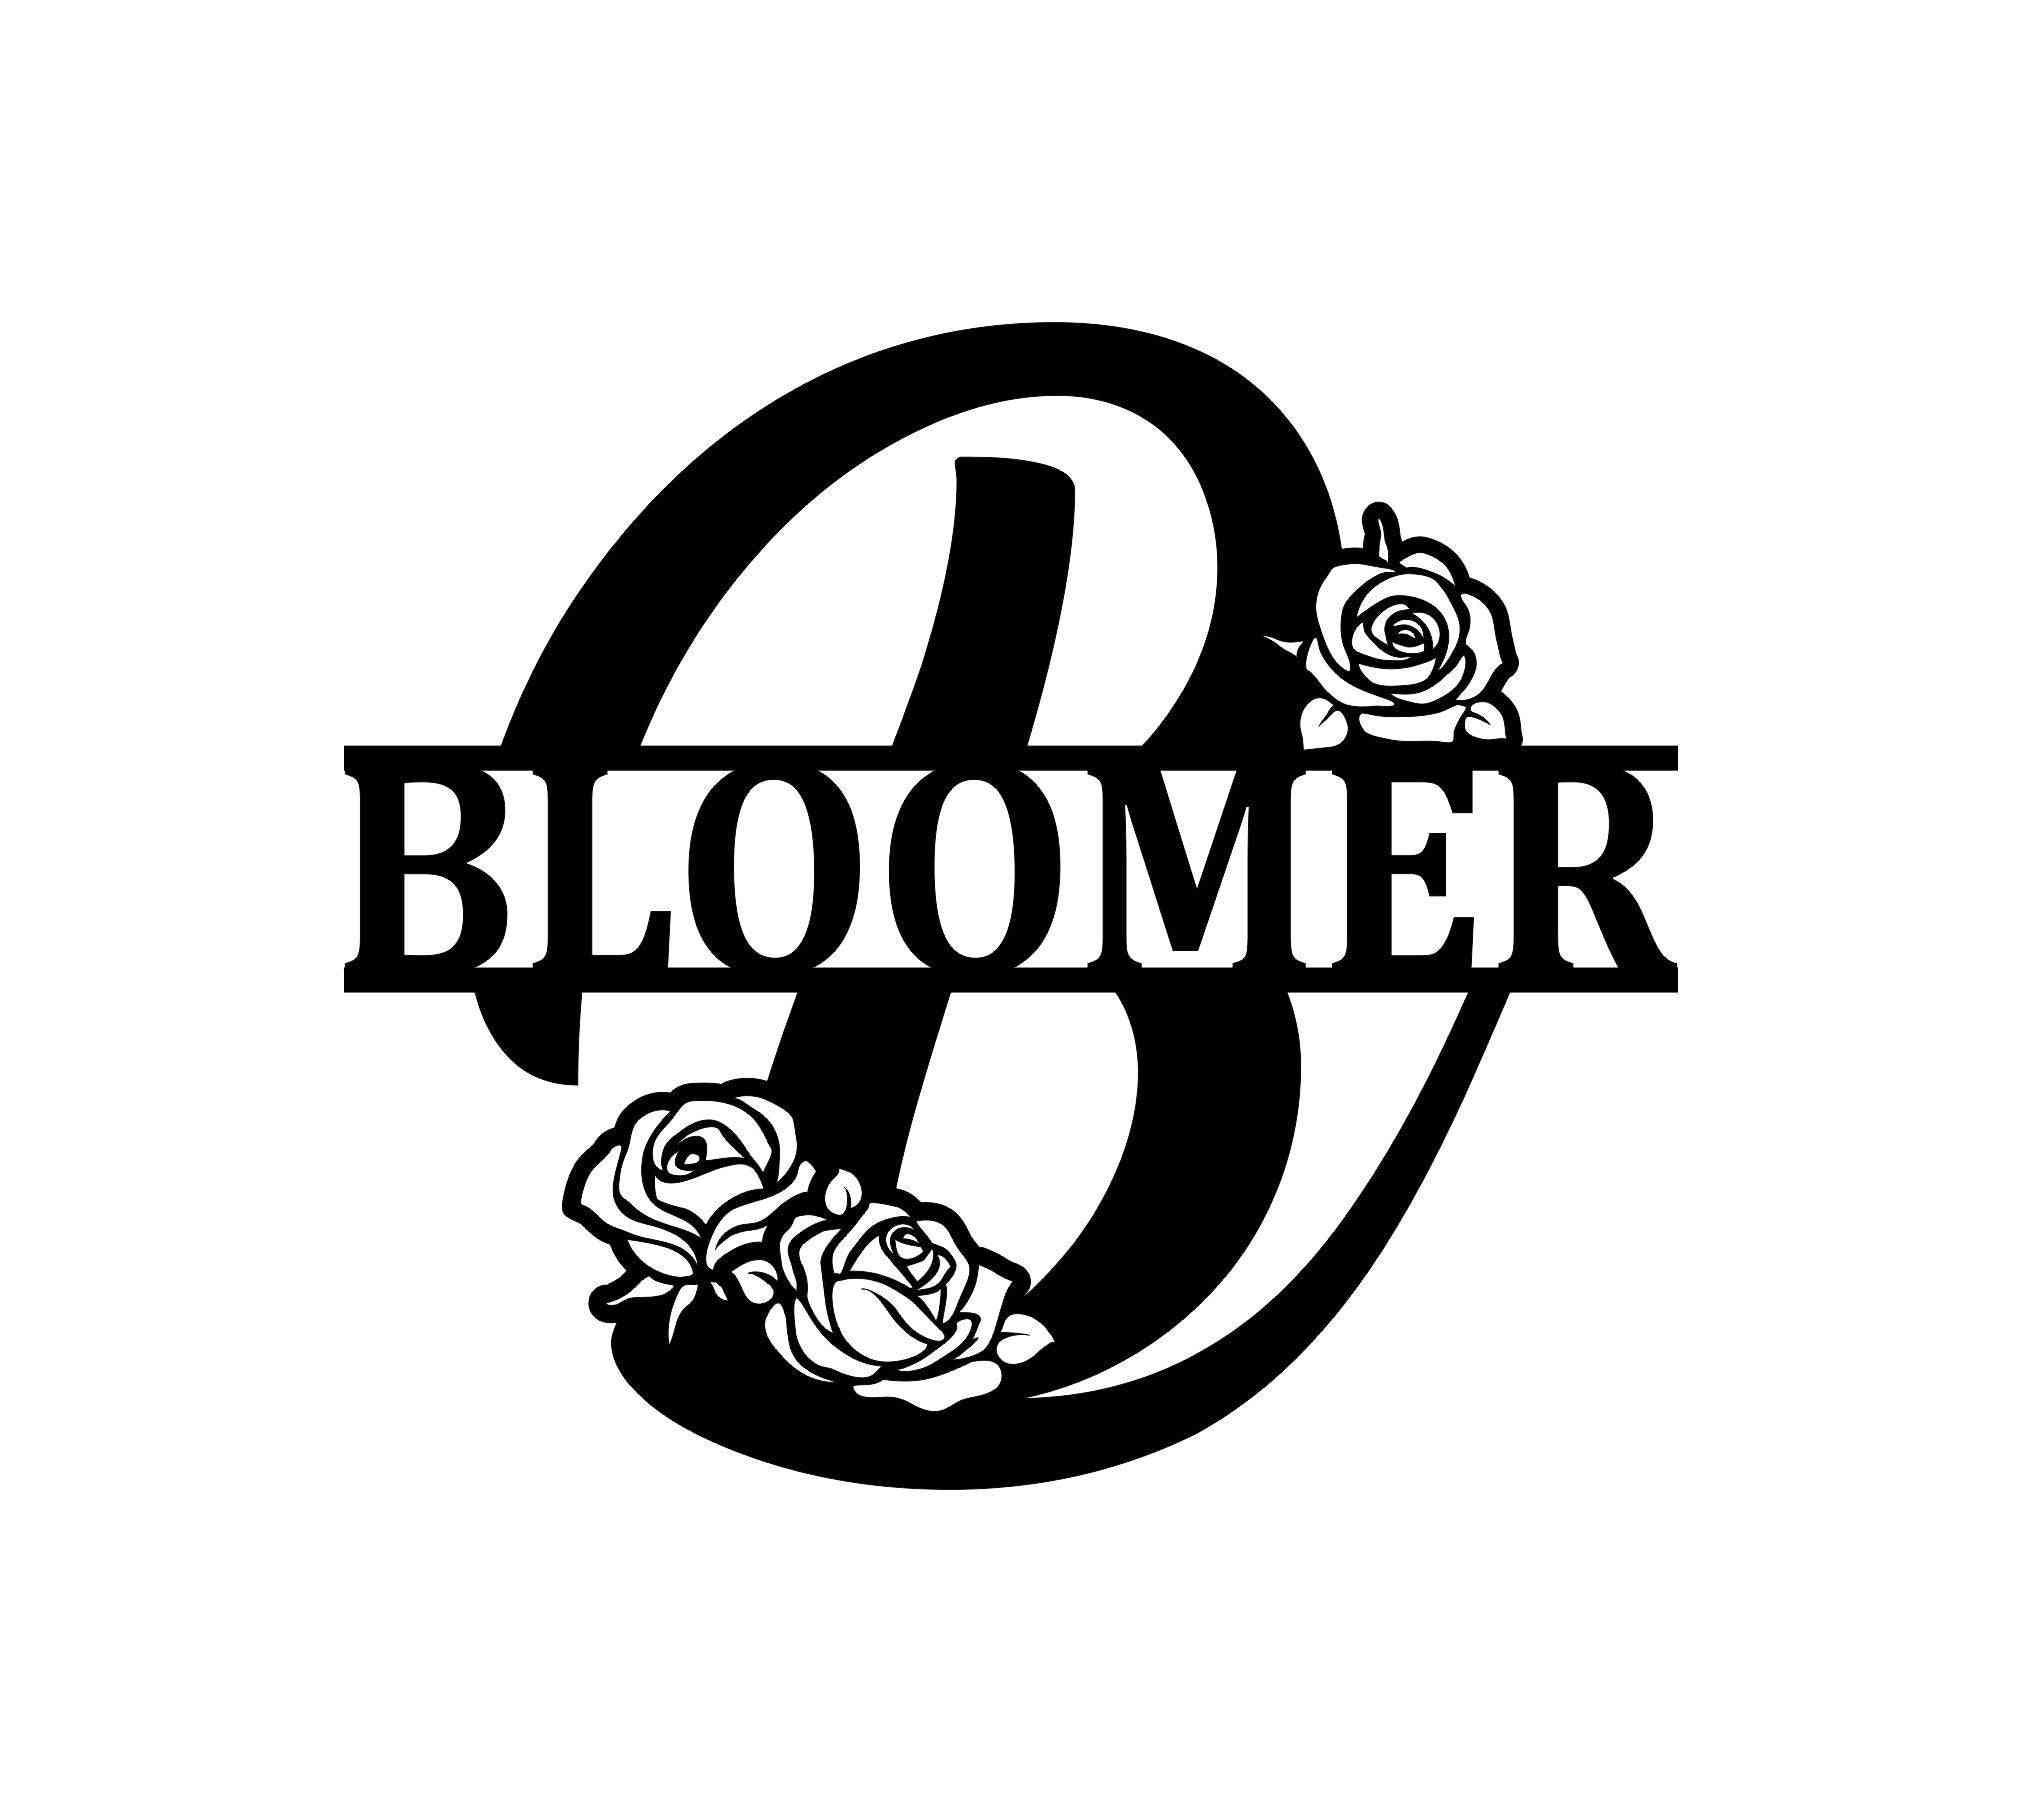 Rose Bloomer Monogram